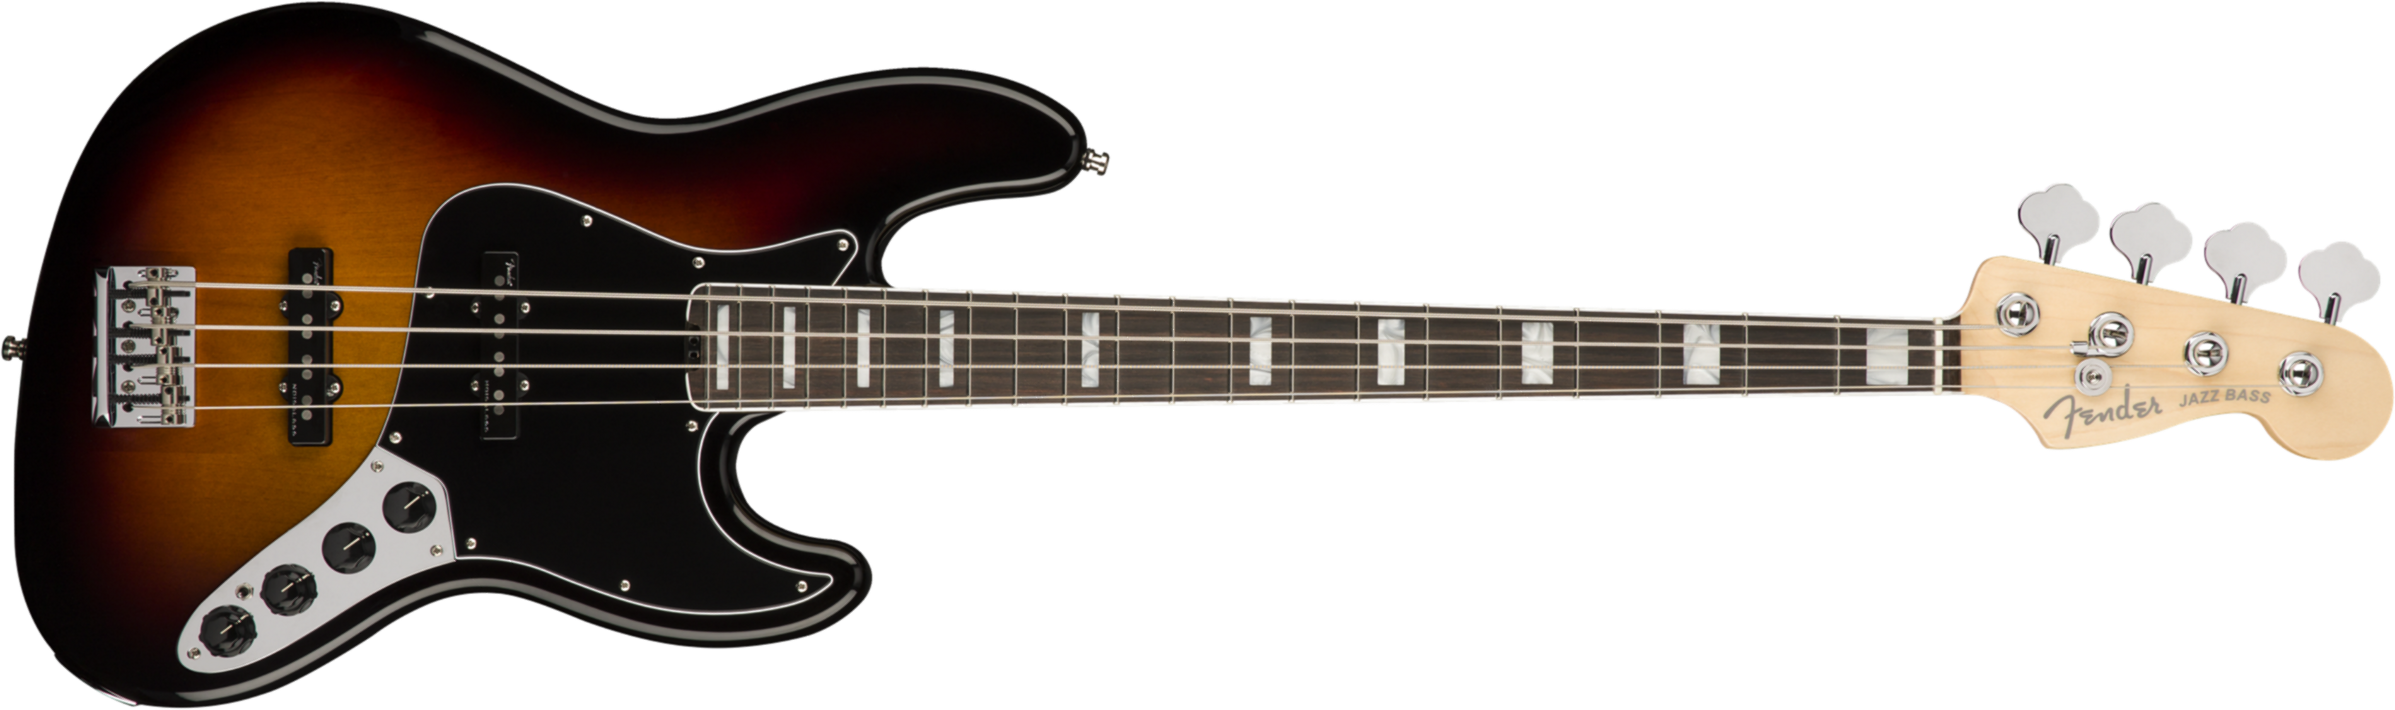 Fender Jazz Bass American Elite 2018 Usa Eb - 3 Color Sunburst - Basse Électrique Solid Body - Main picture